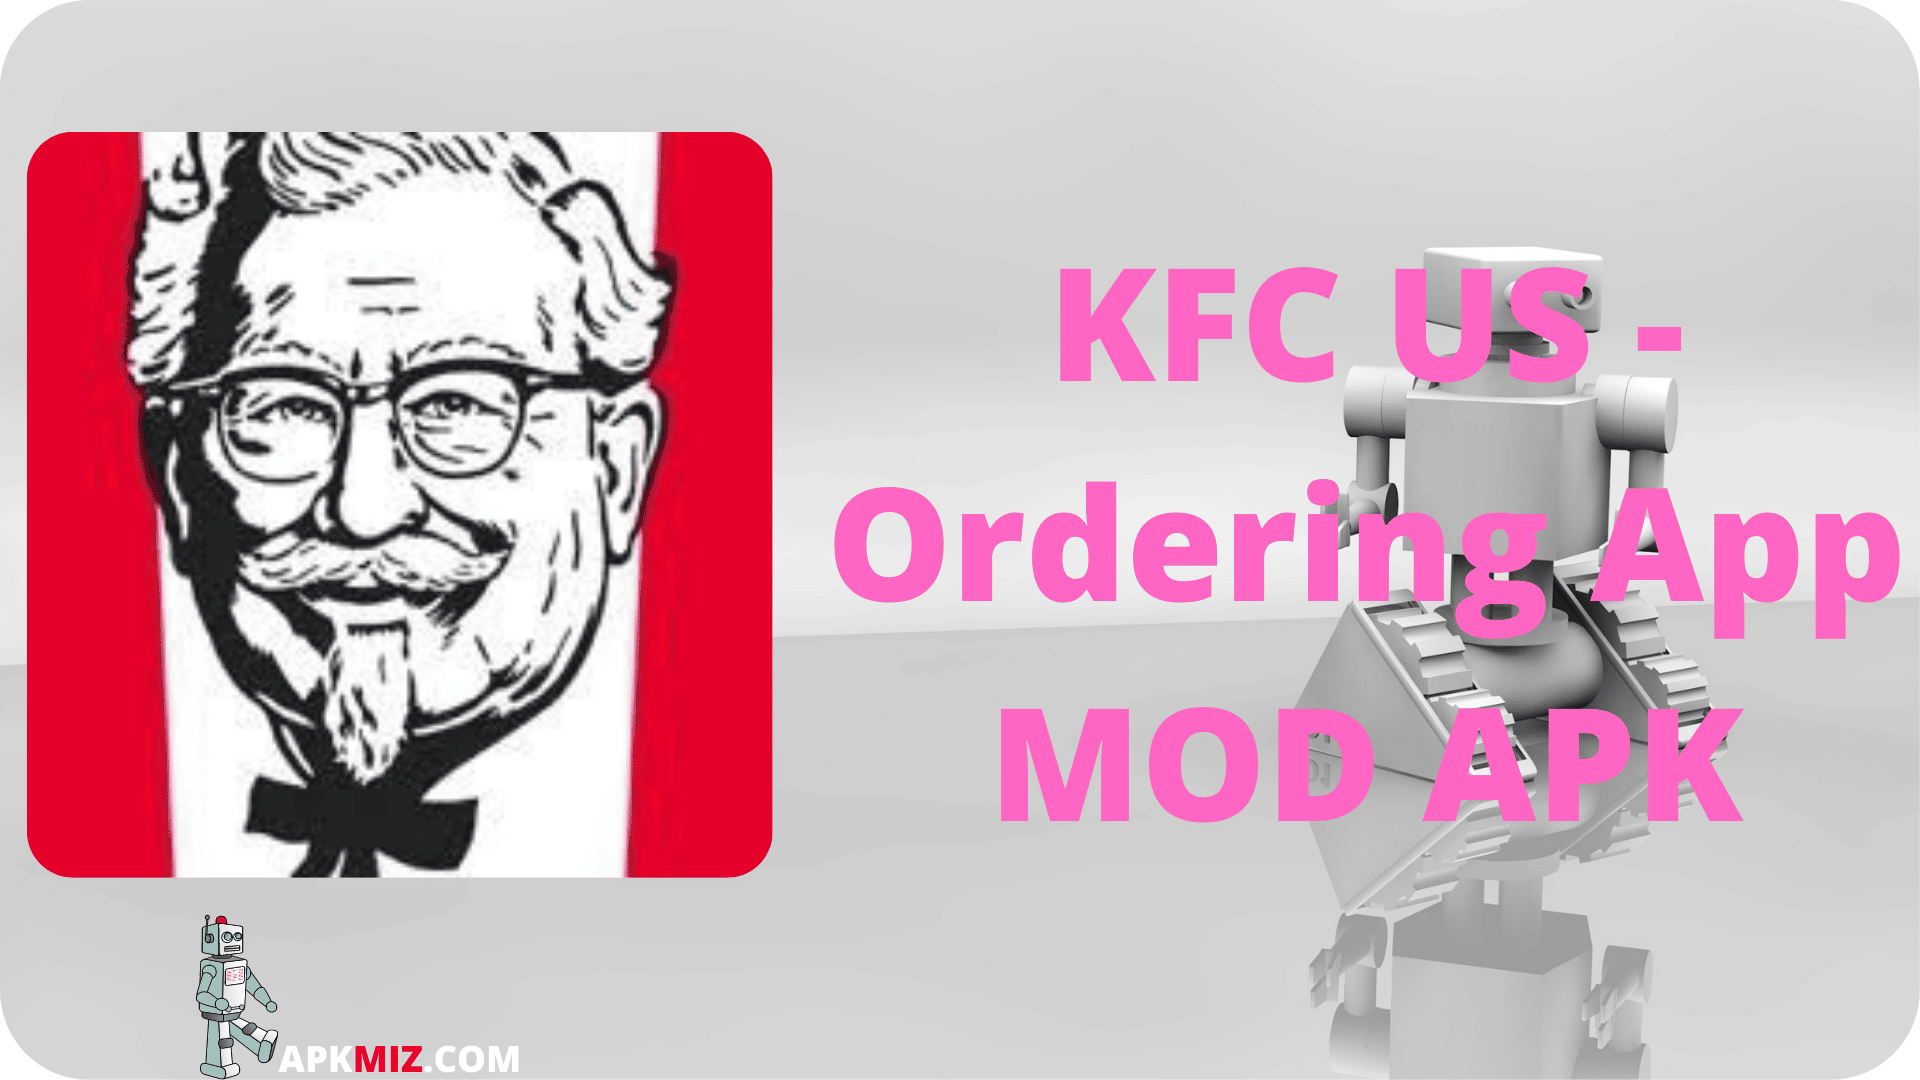 KFC US Ordering App Mod Apk